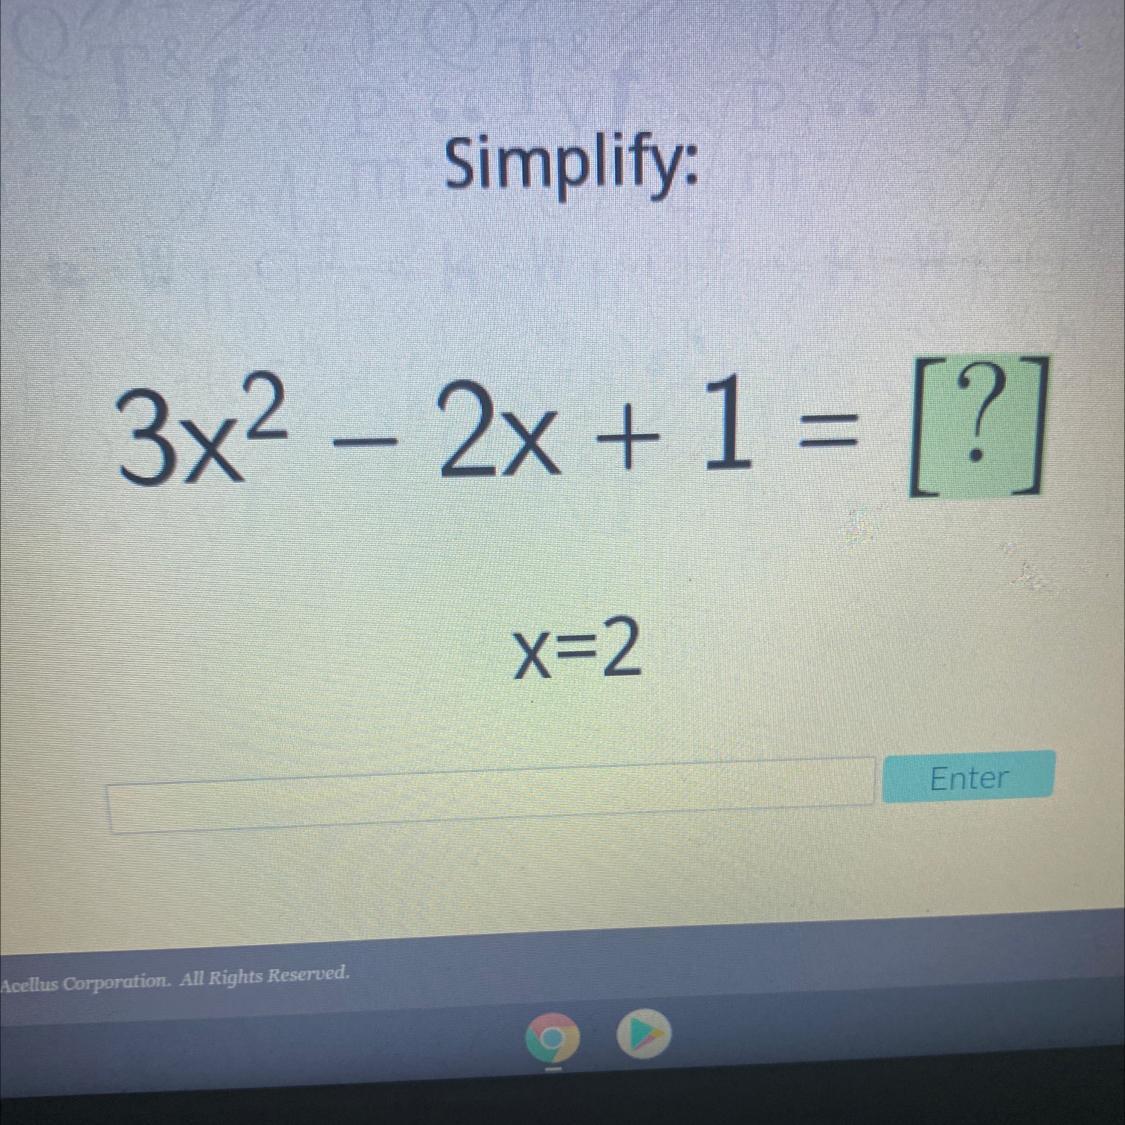 Simplify:3x2 2x + 1 = [?]x=2